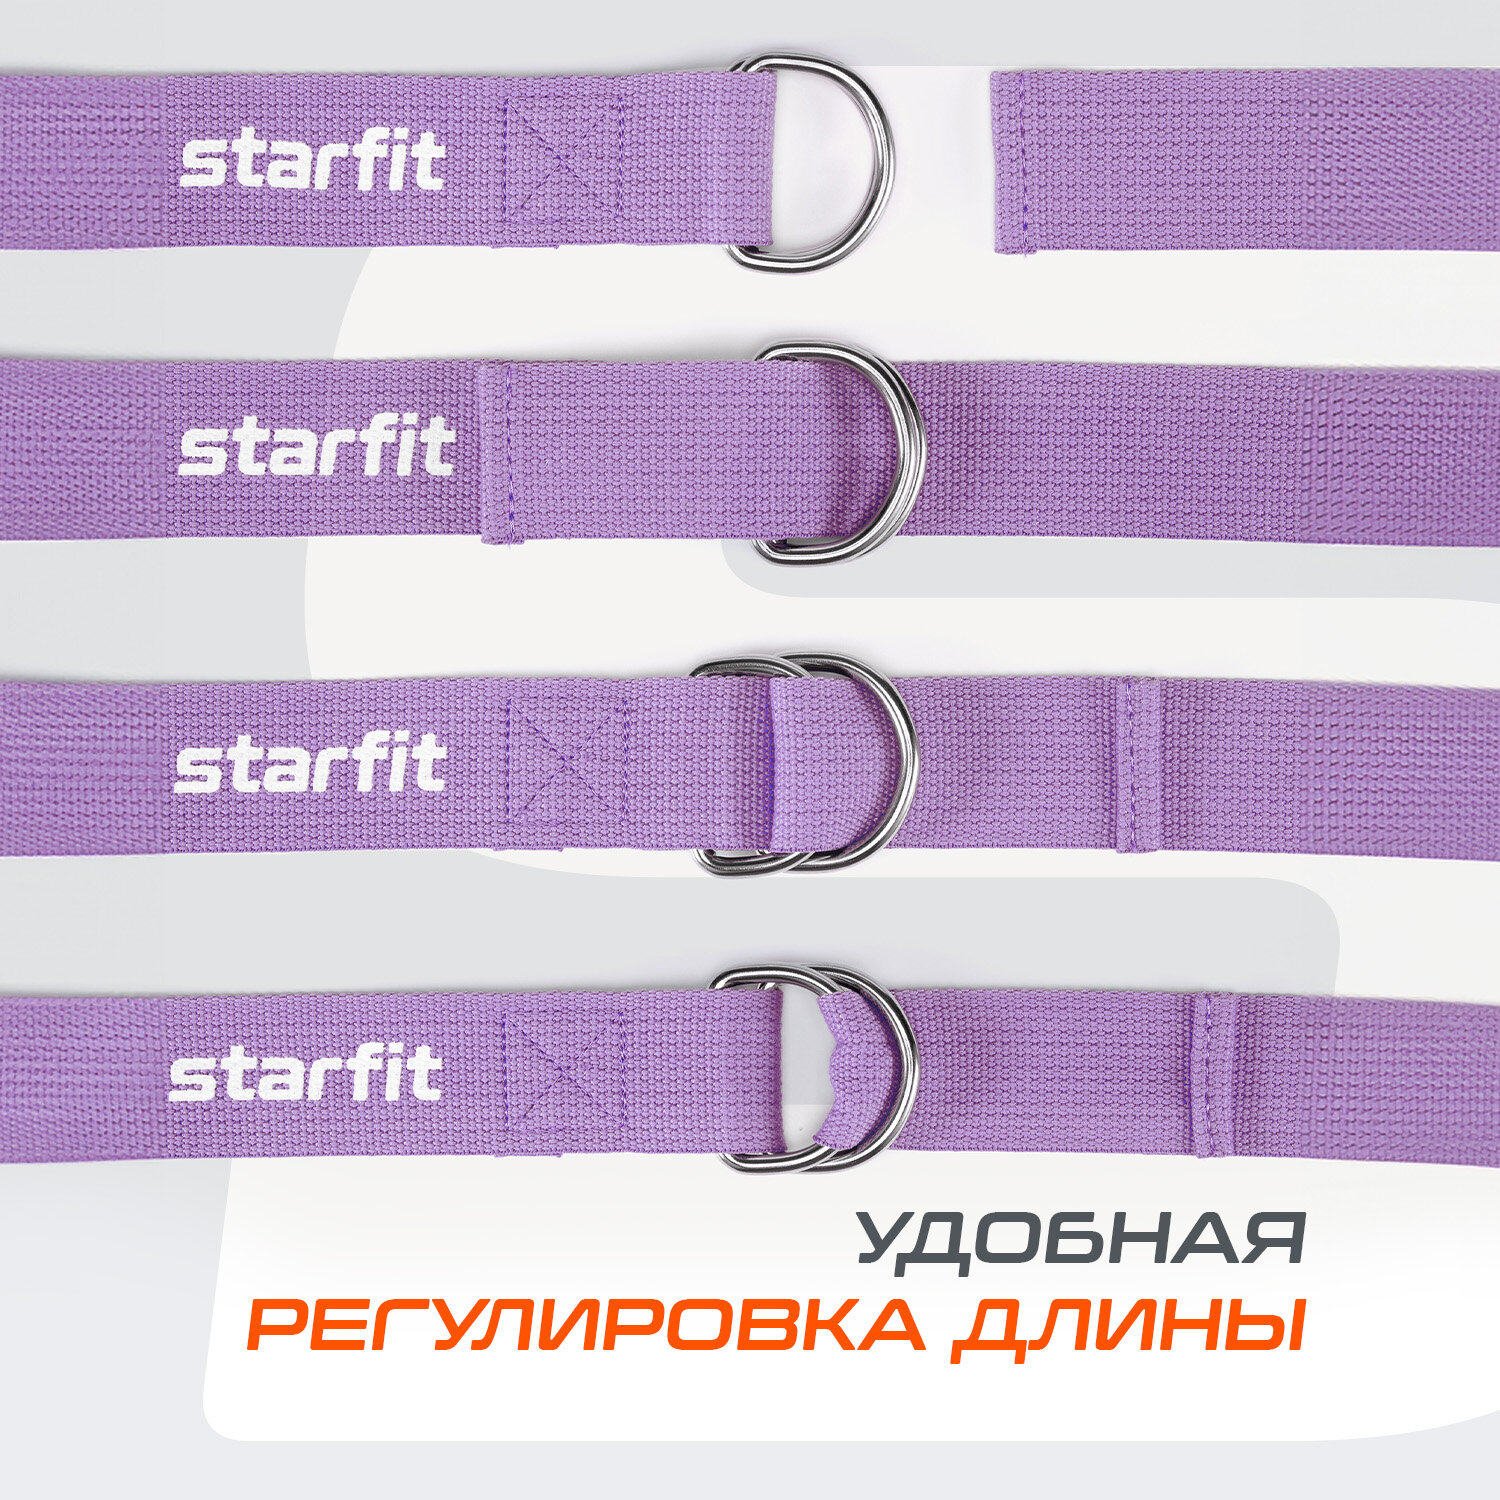 Ремень для йоги STARFIT YB-100 180 см, хлопок, фиолетовый пастель